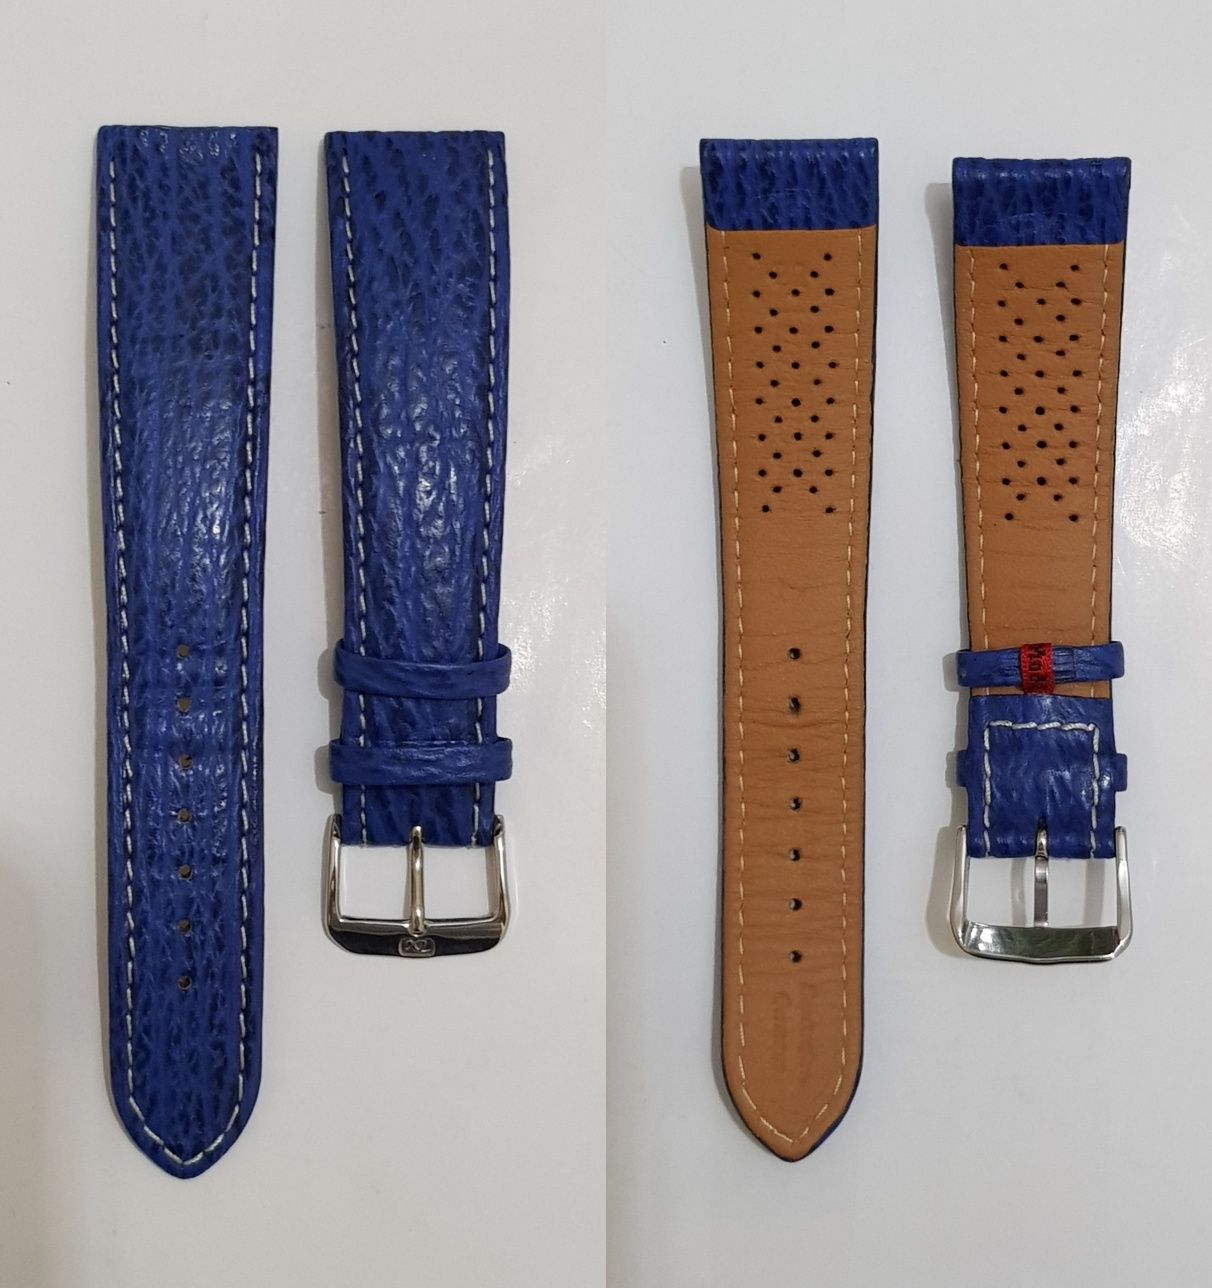 Curea ceas Di Modell, din PIELE DE RECHIN, albastra, 22mm ORIGINALA !!